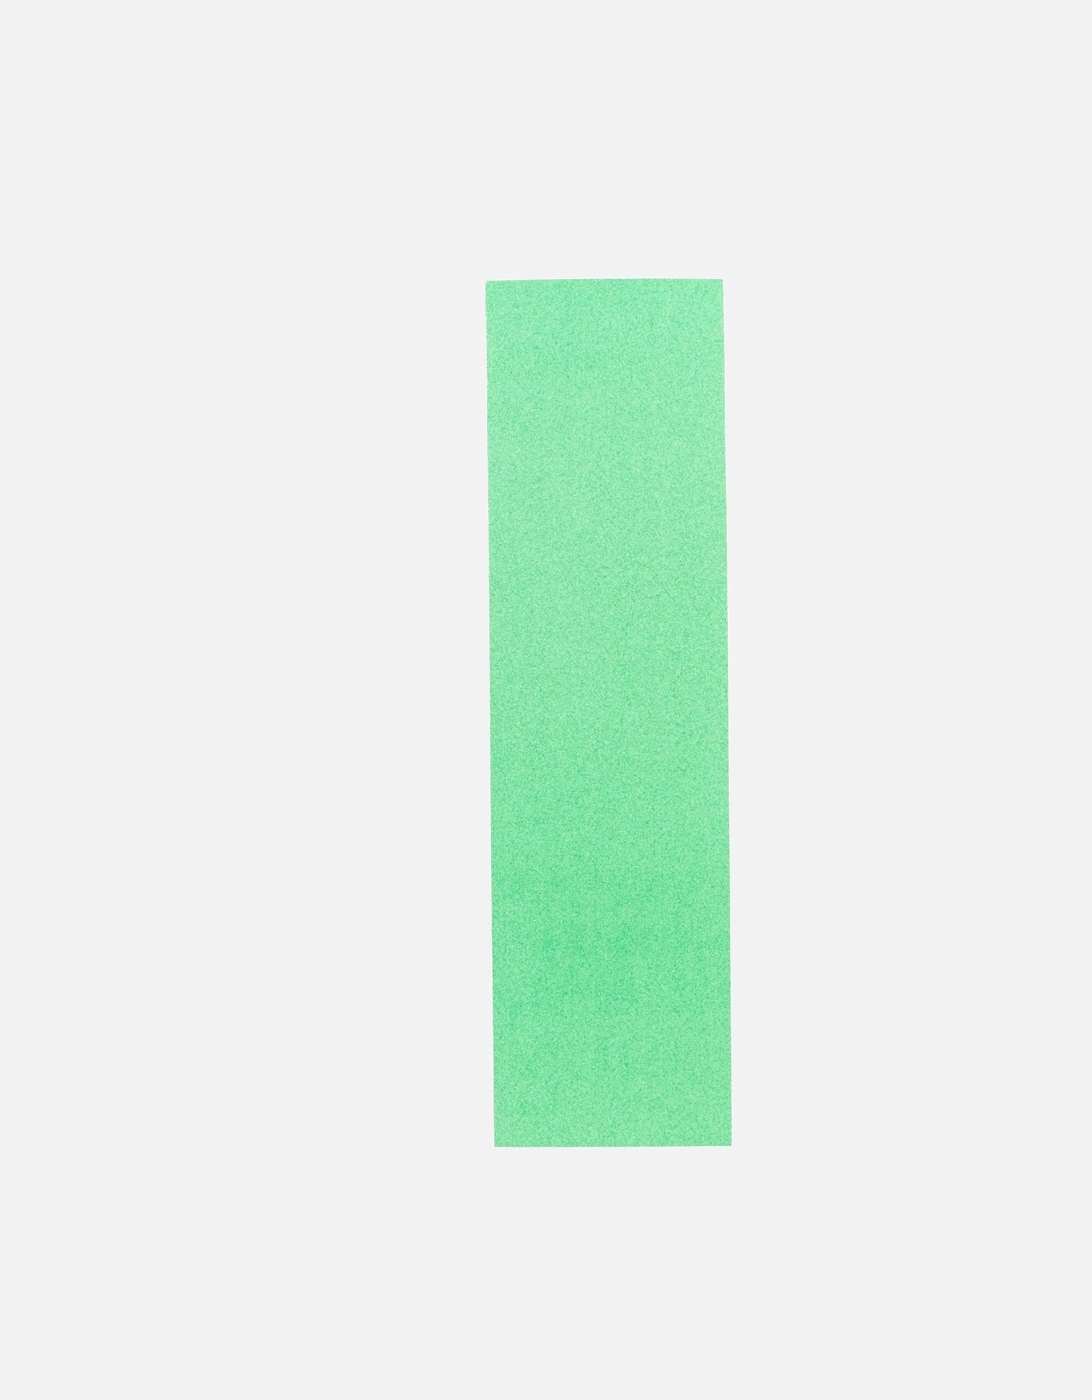 9" Width Griptape Sheet - Neon Green, 2 of 1